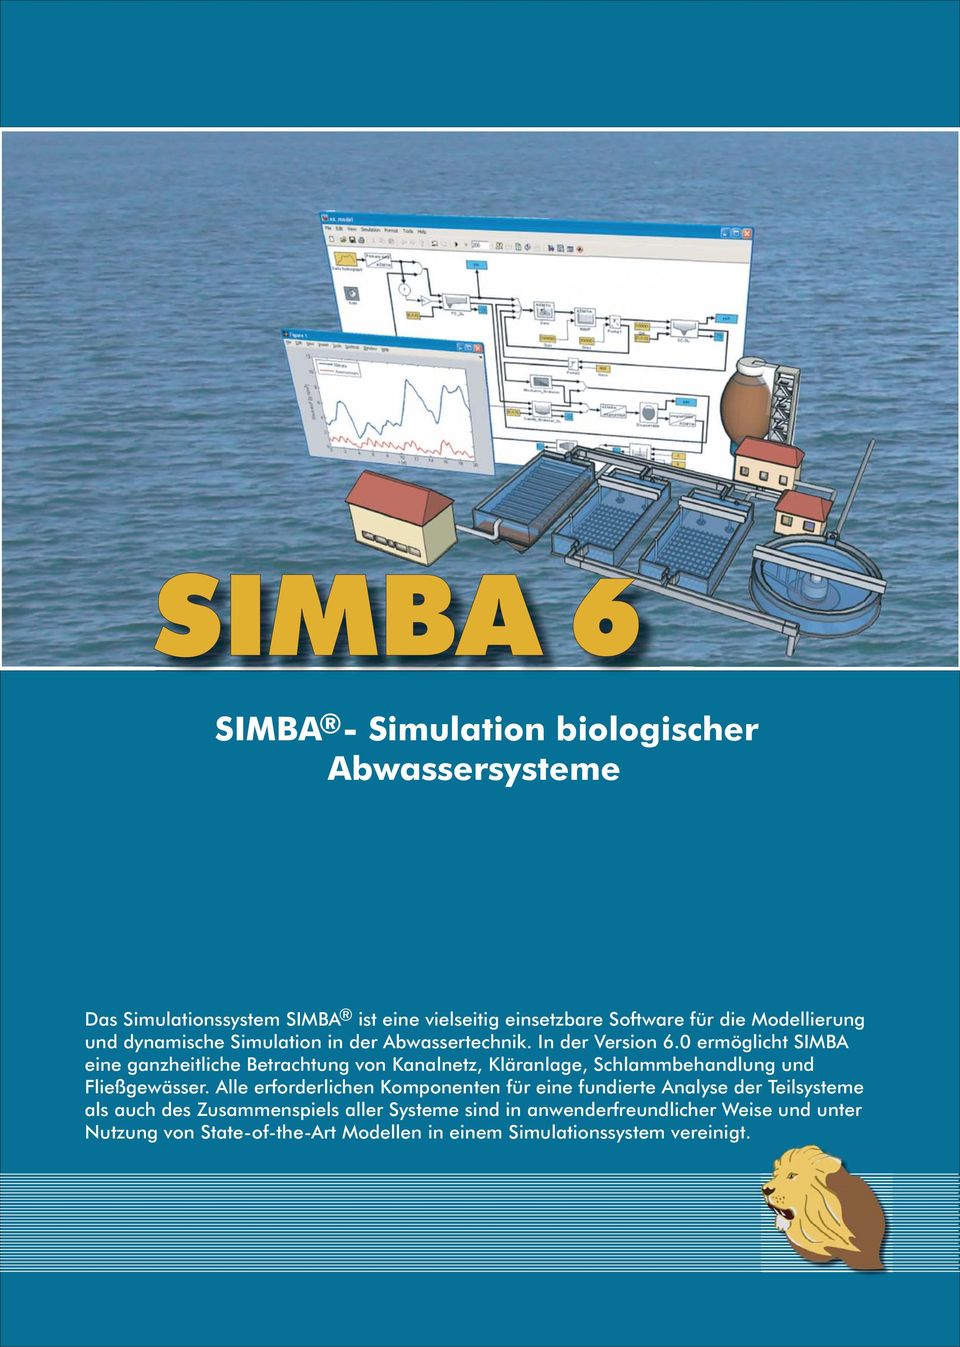 0 ermöglicht SIMBA eine ganzheitliche Betrachtung von Kanalnetz, Kläranlage, Schlammbehandlung und Fließgewässer.